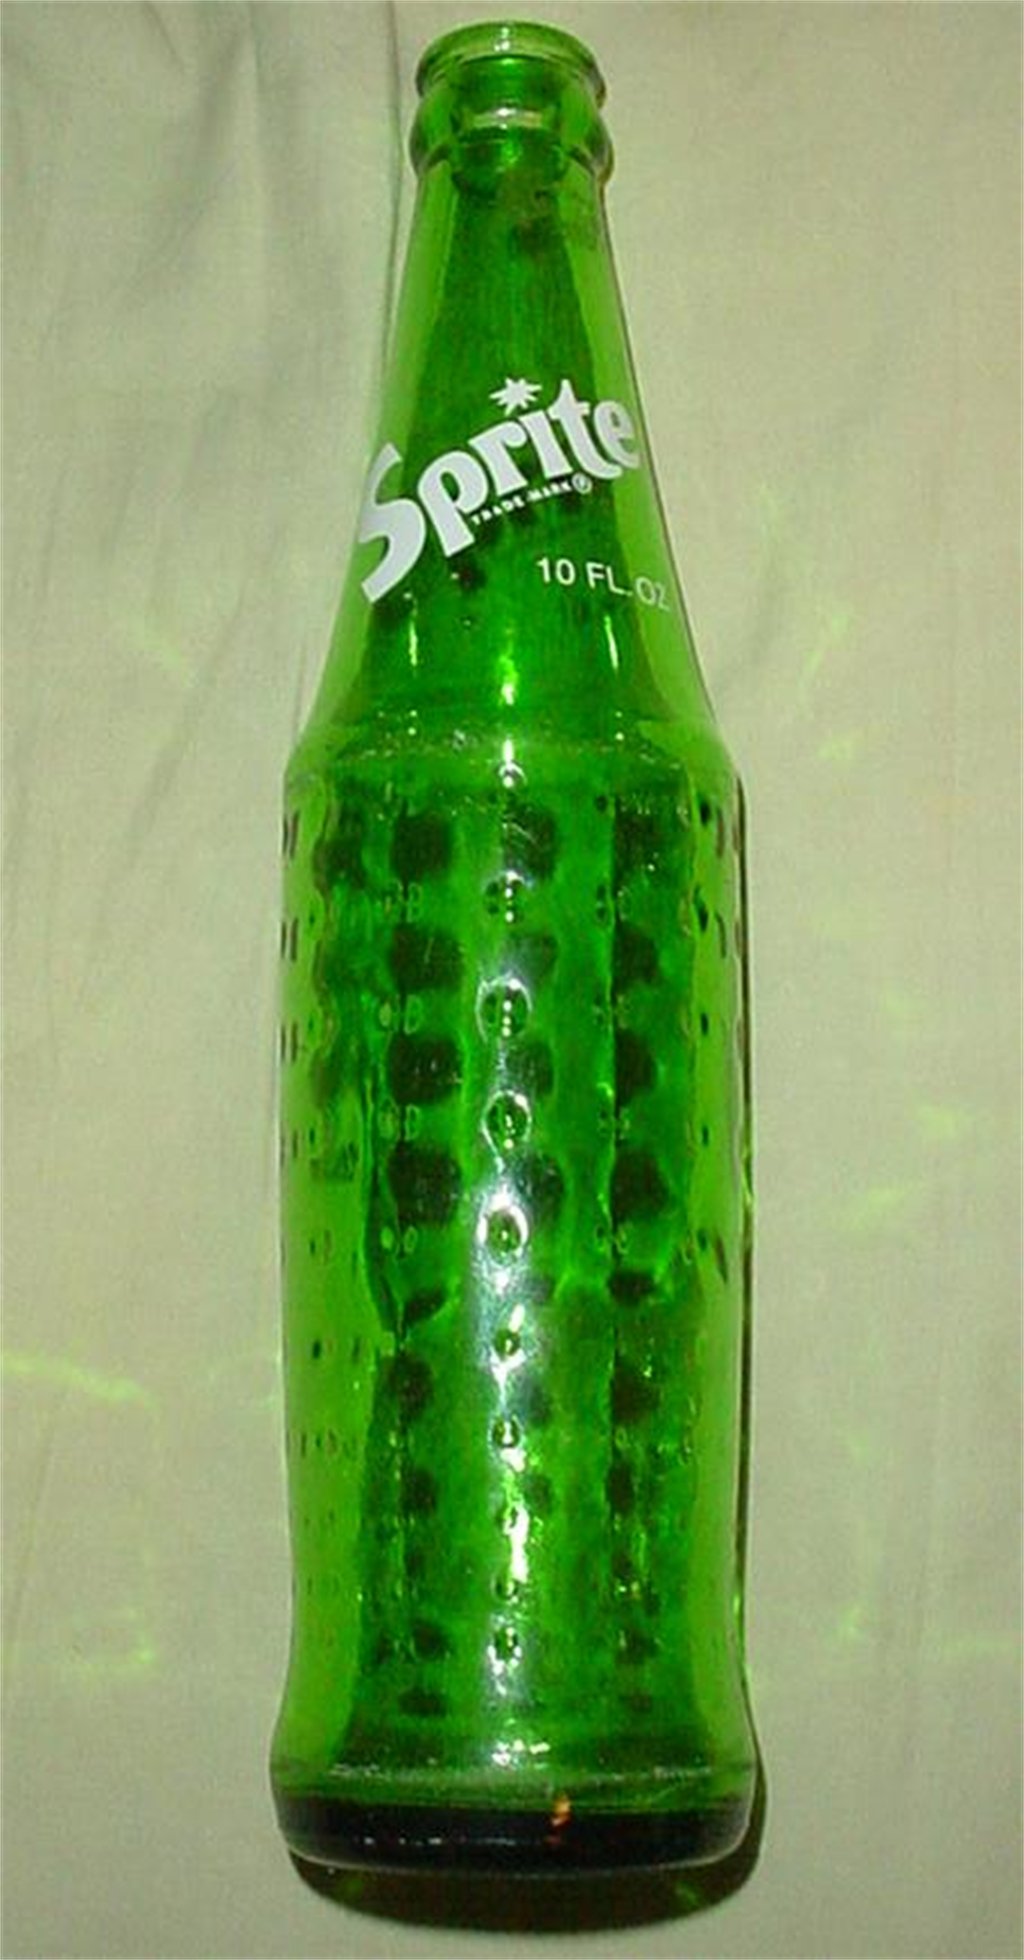 雪碧為可口可樂公司所生產的軟性飲料，正確唸法應該是/spraɪt/。(圖/截自維基百科)